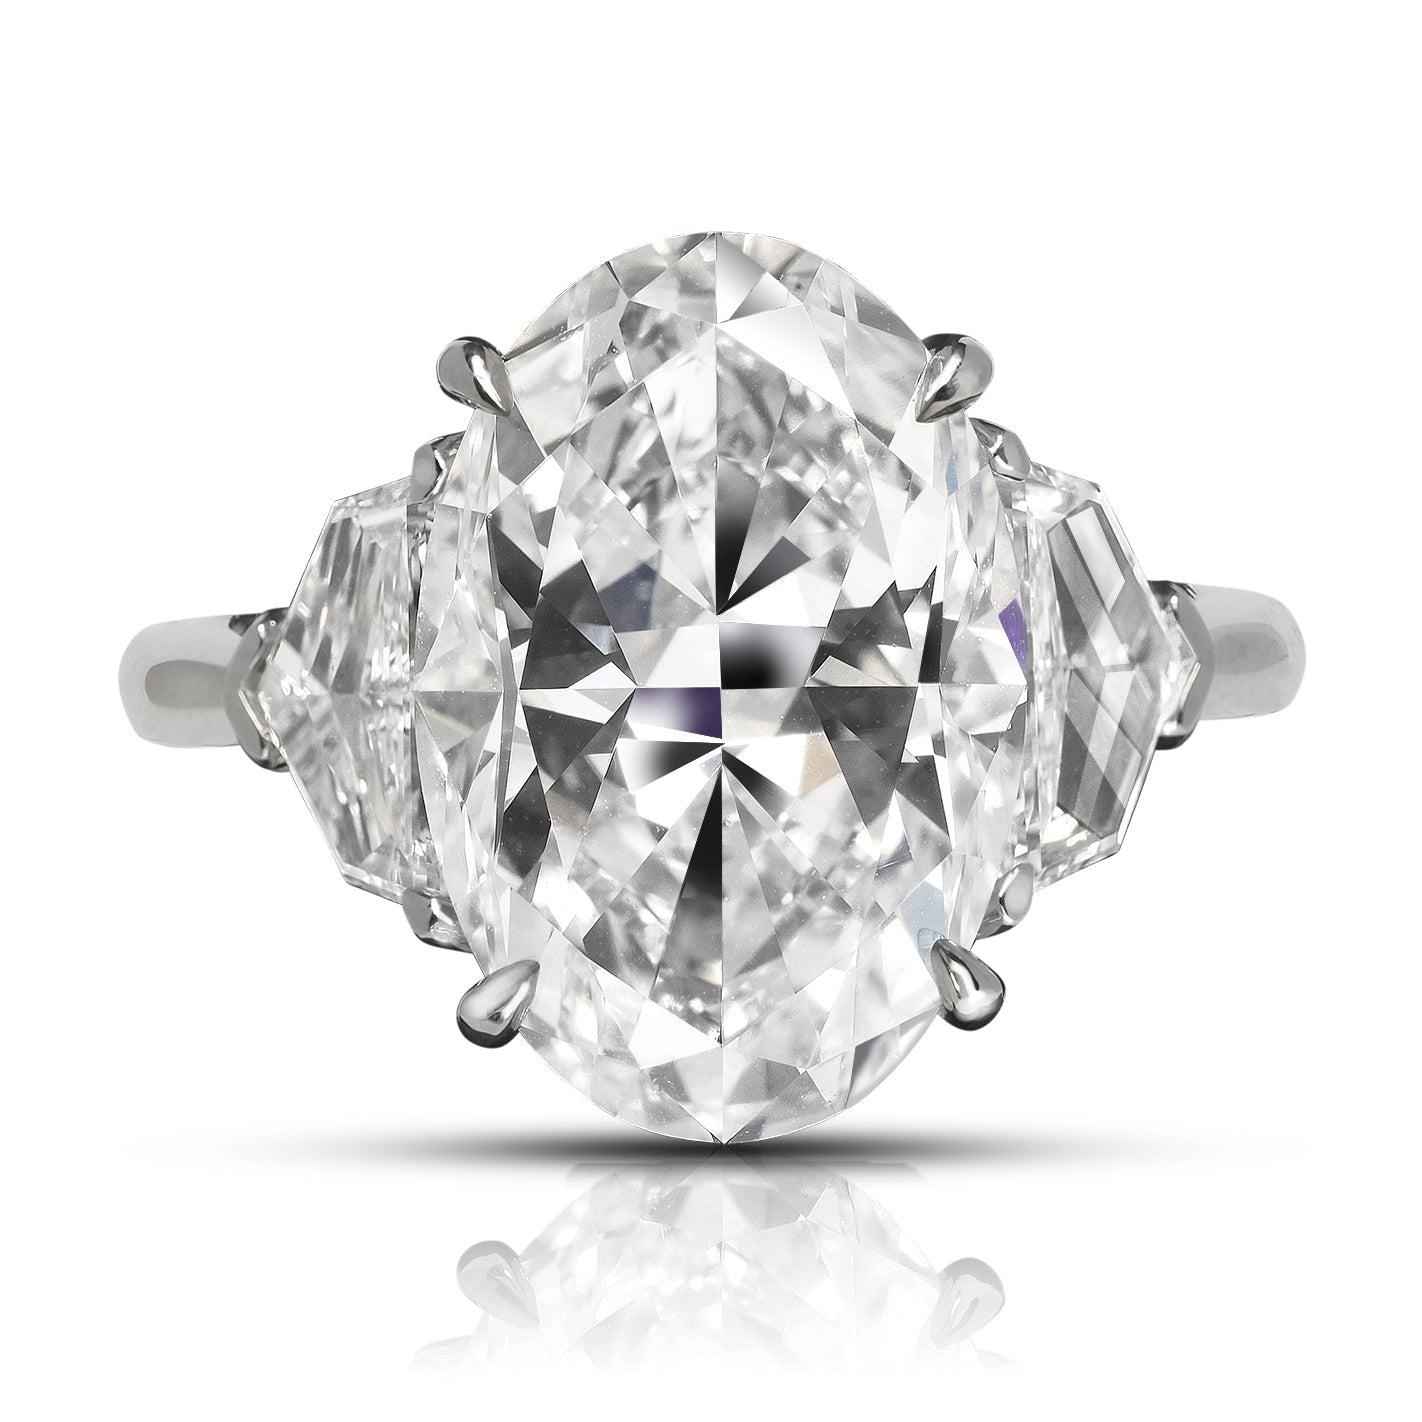 BAGUE DE FIANÇAILLES EN PLATINE AVEC DIAMANT JASMINE DE MIKE NEKTA
CERTIFIÉ GIA

Diamant central :
Poids en carats : 6,5 carats
Couleur : D*
Clarté : VVS1
Style : OVAL
Mesure :  14.8 x 10,0 x 6,6 mm

* Ce diamant a été traité par un ou plusieurs